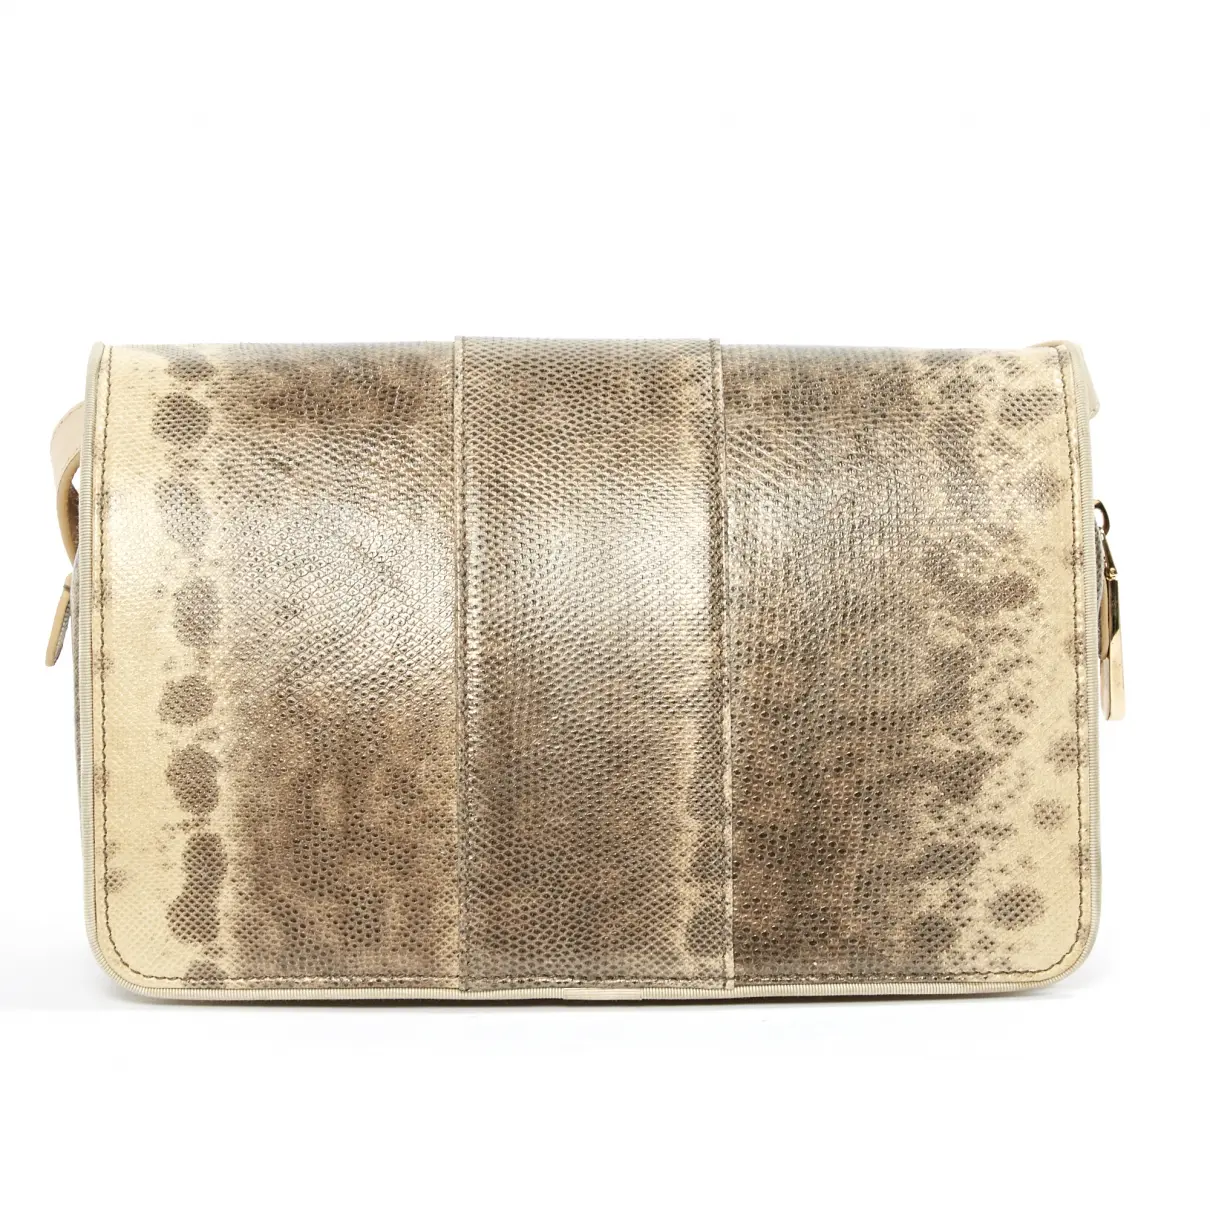 Buy Baraboux Exotic leathers handbag online